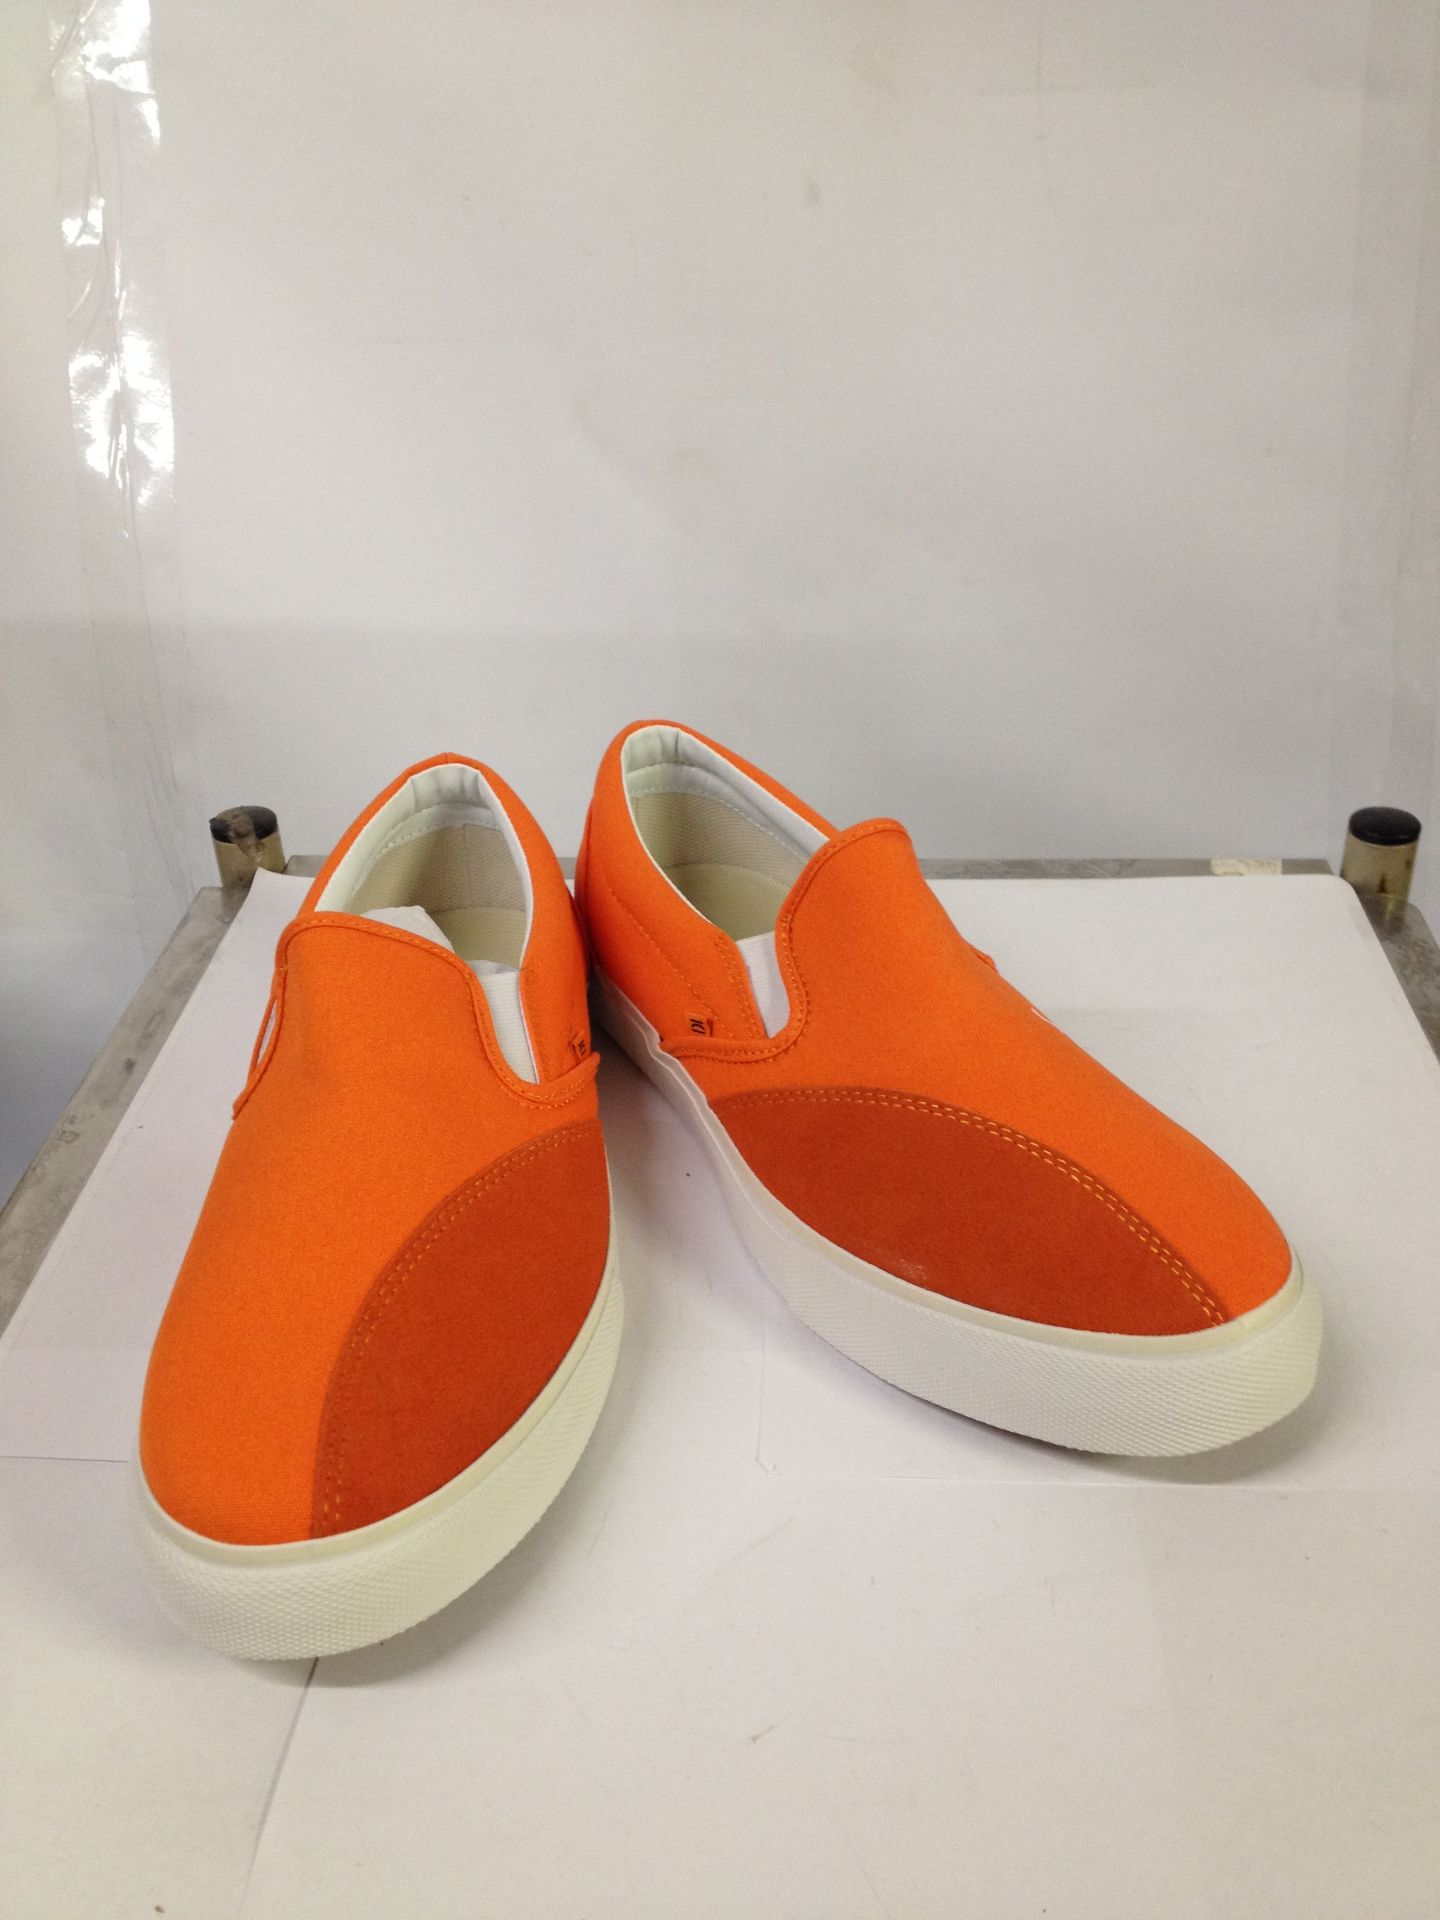 1 x Dodds Skate Shoe | Colour: Rich Orange | UK Size: 10 | Unisex | RRP £ 55 - Image 2 of 2